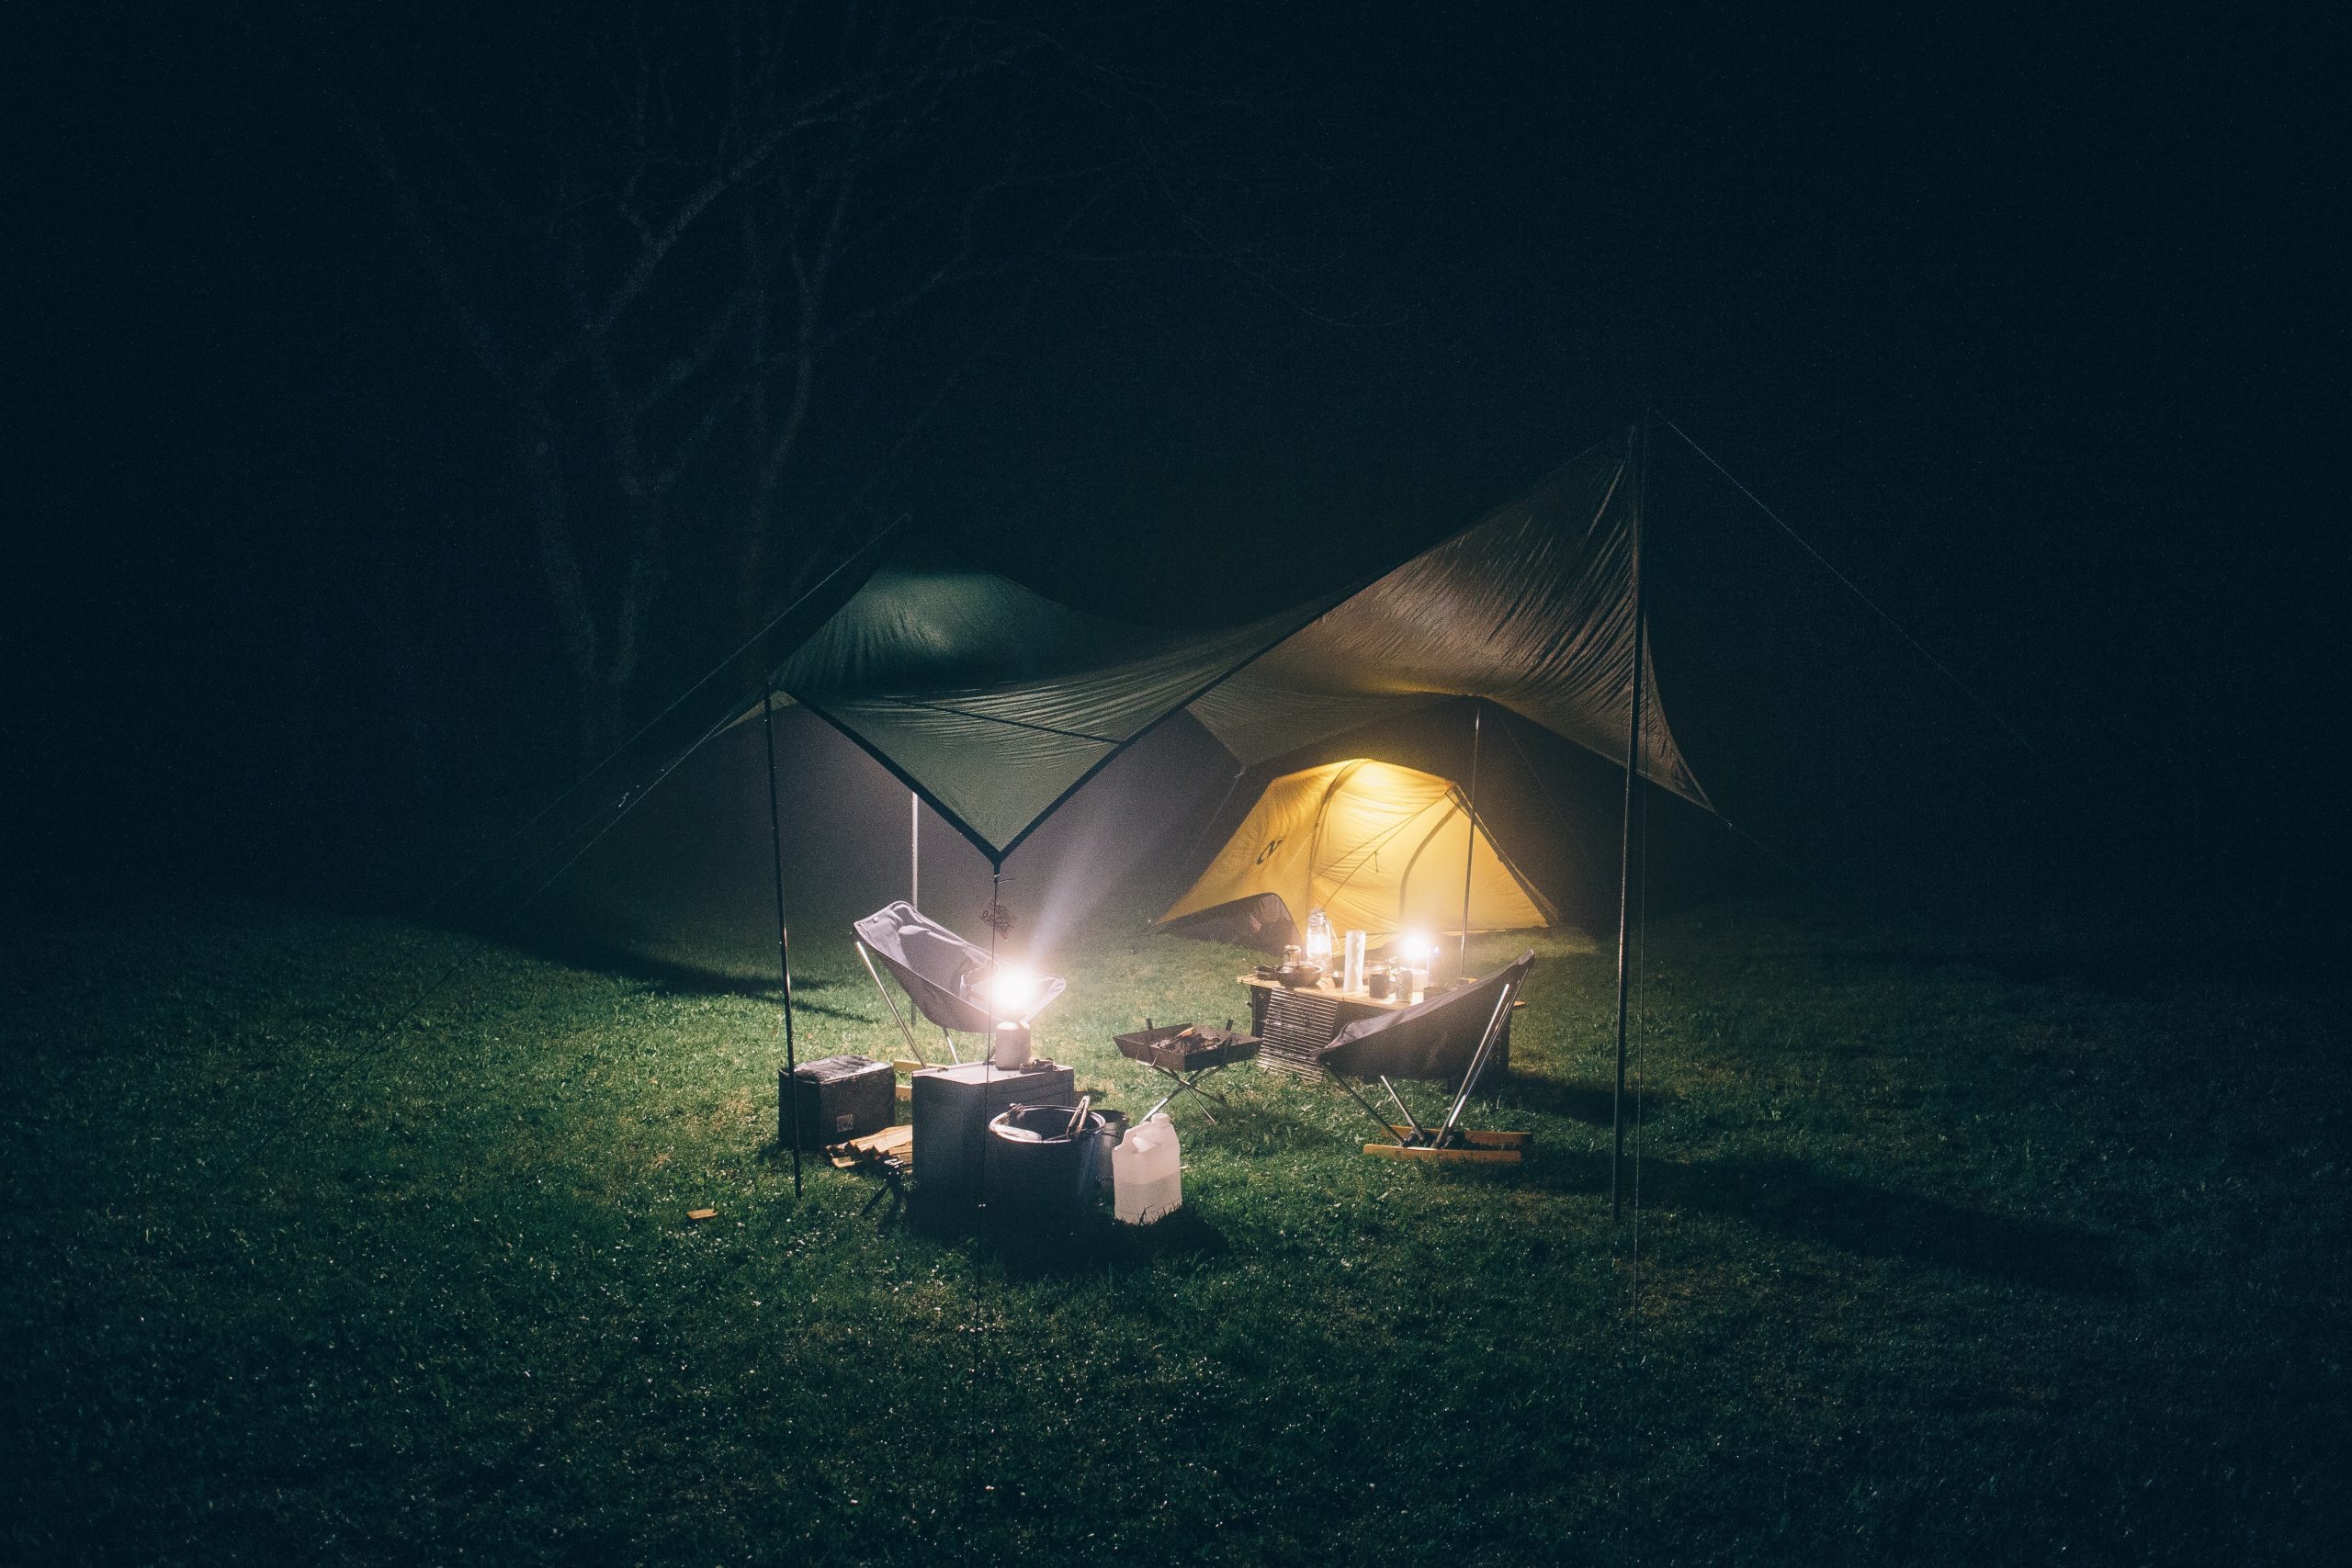 ソロキャンプ用テントの選び方 | そらのしたスタイル